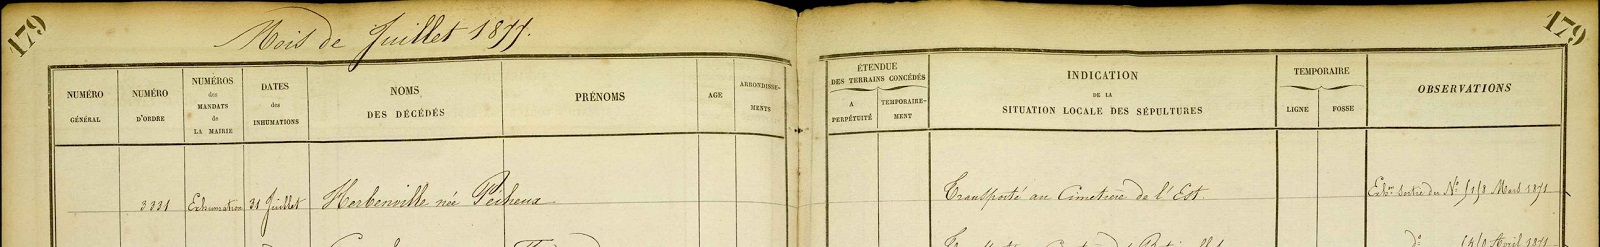 Registre journalier d'inhumation 1877, cimetière de Montmartre